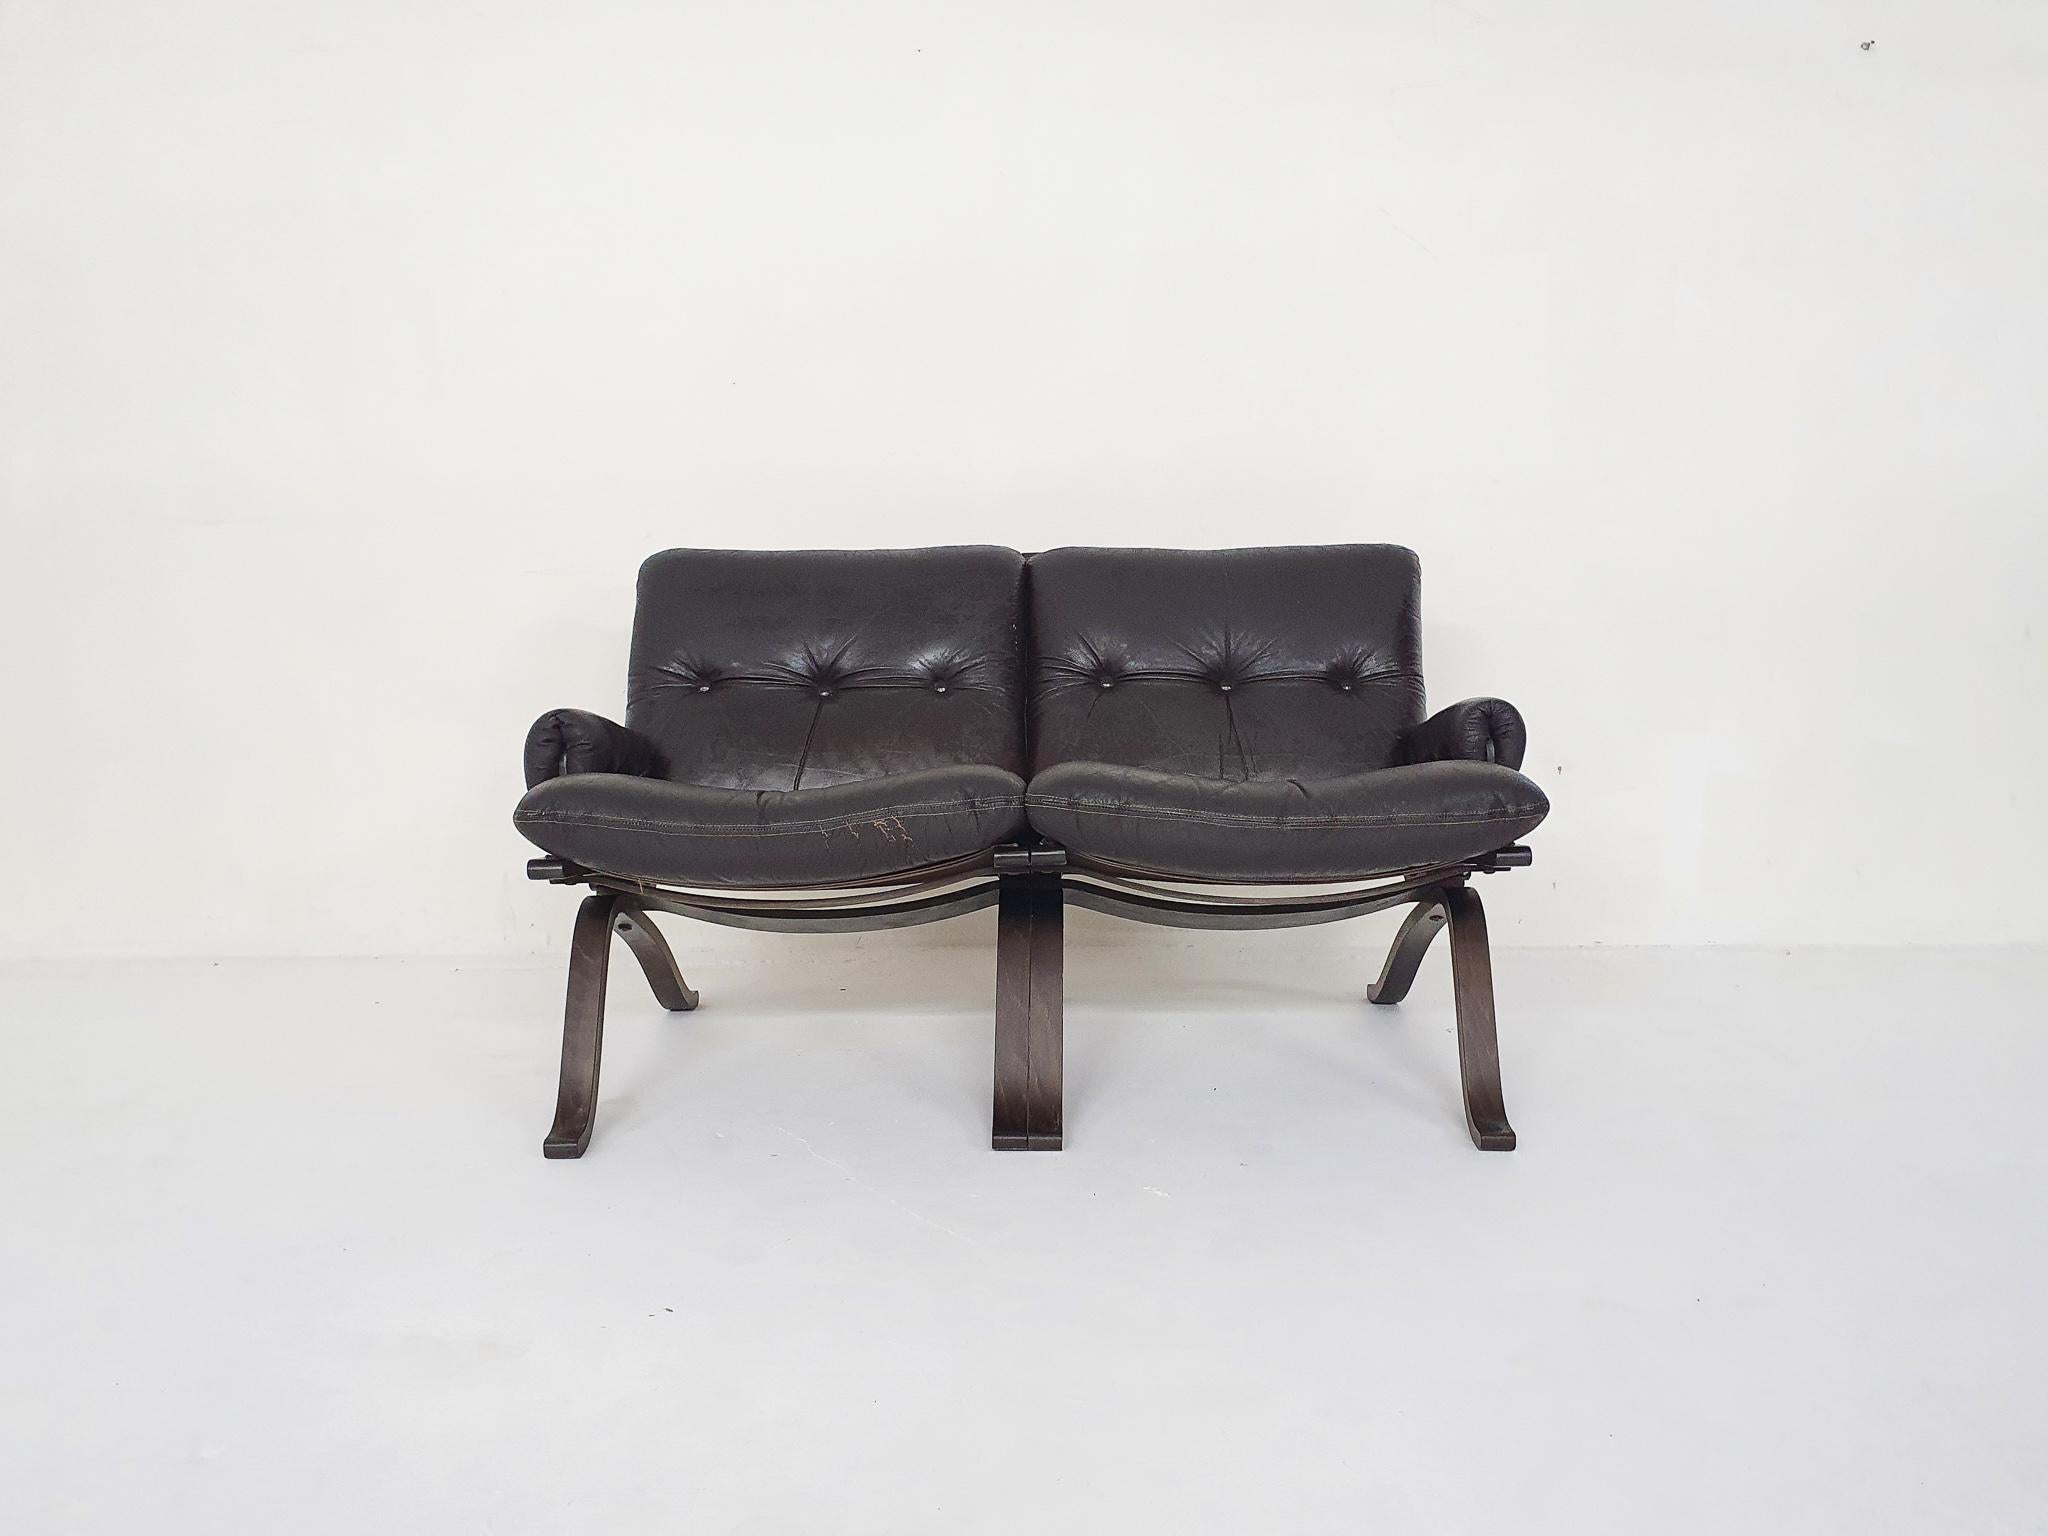 Zweisitziges Sofa aus Sperrholz mit dunkelbraunen Lederkissen. Einige Gebrauchsspuren, auf der Vorderseite des Sitzkissens.
Zuschreibung an Ingmar Relling für Westnofa.